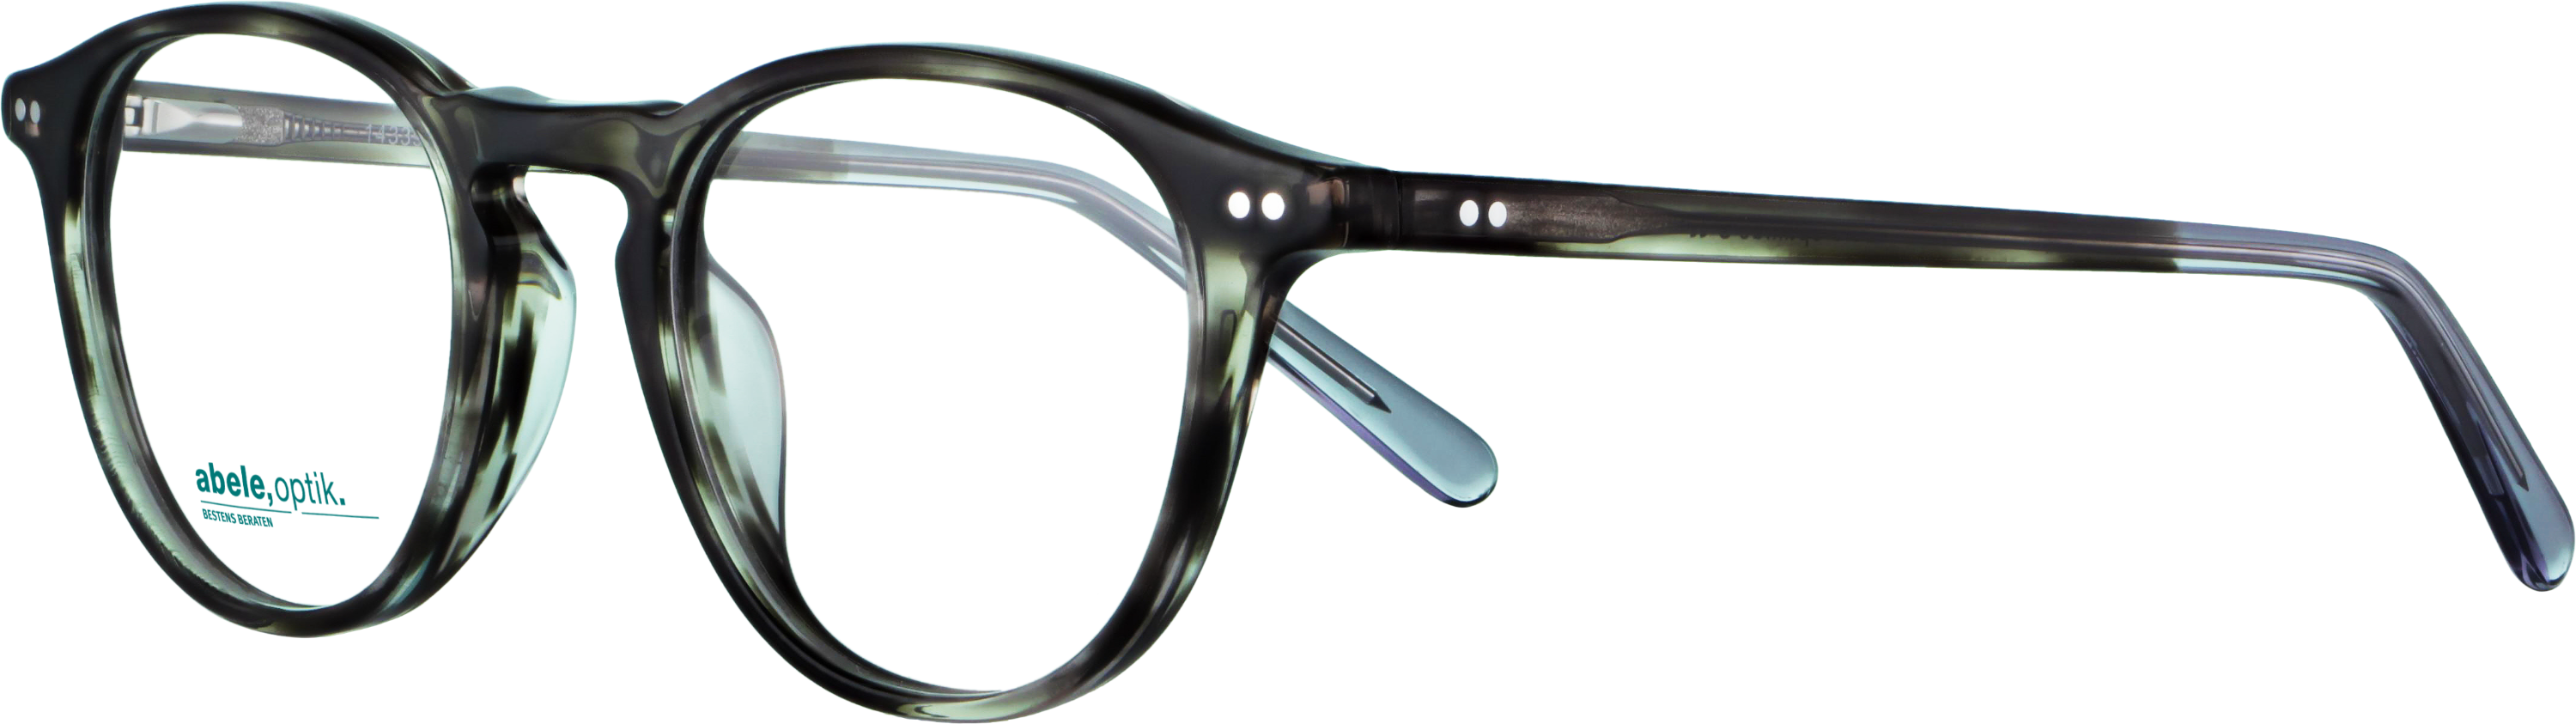 Das Bild zeigt die Korrektionsbrille 143391 von der Marke Abele Optik in grau - schwarz.